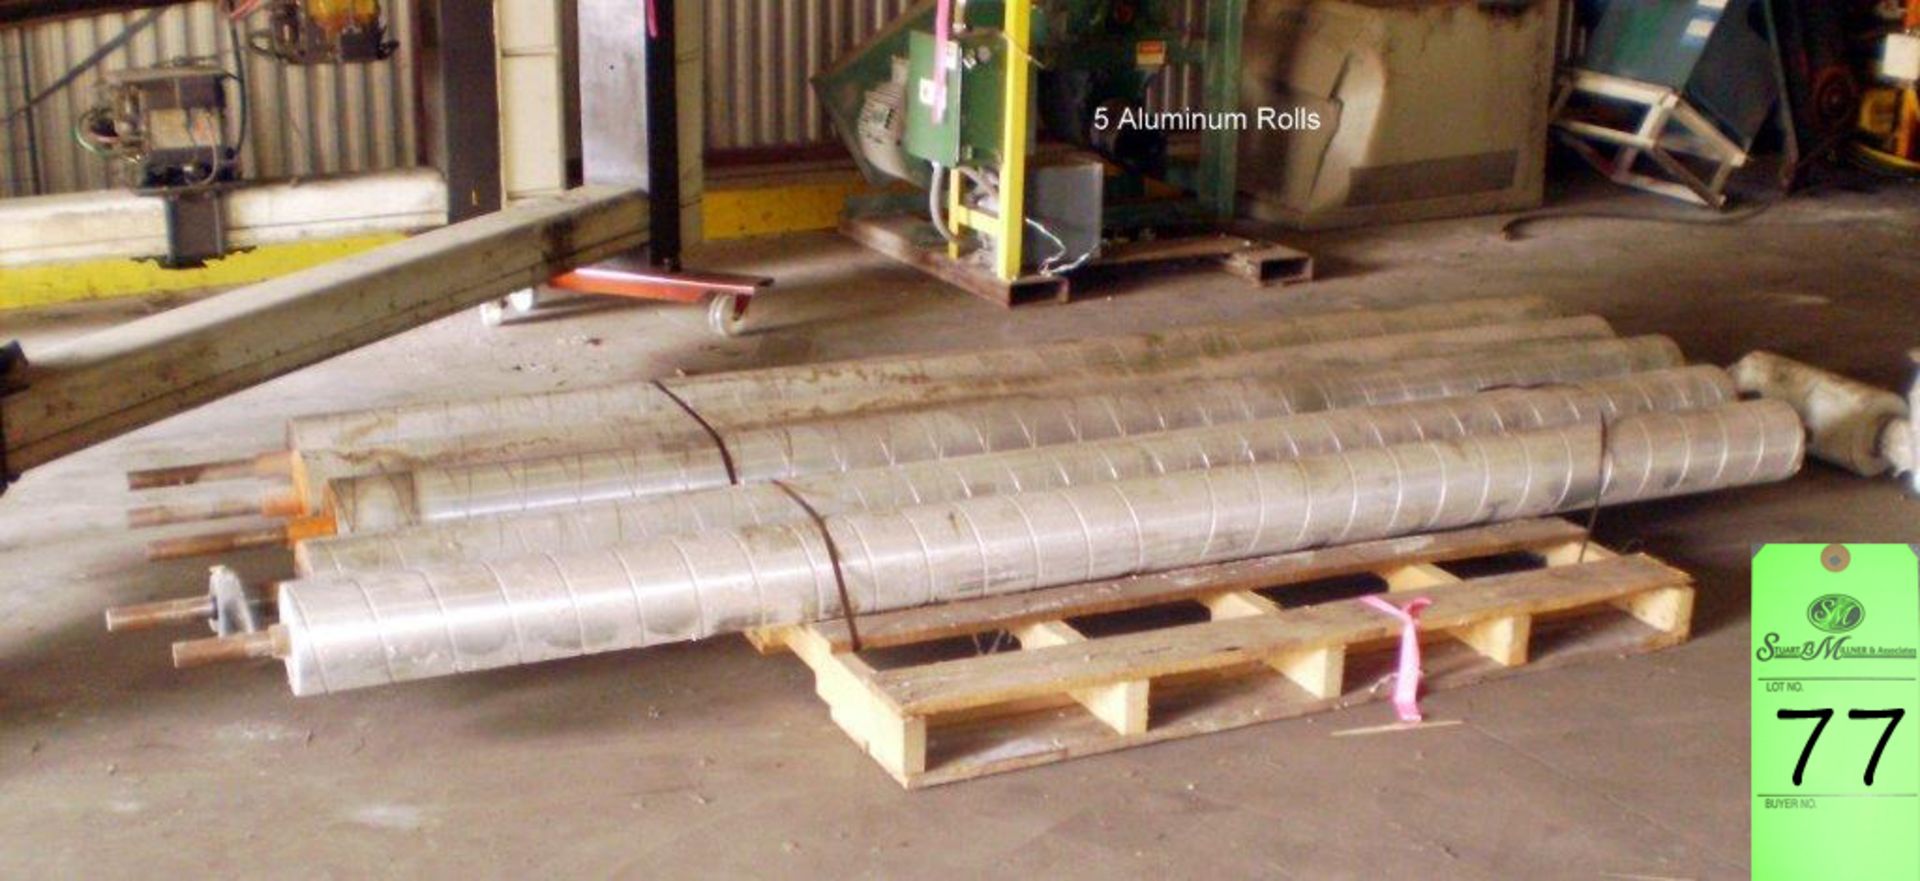 Aluminium Rolls; 5 Aluminum Rolls (4)-11'6"OAl 7"Dia (1)-10' 11'OAL Steal Shaft Center Hollow Rolls.